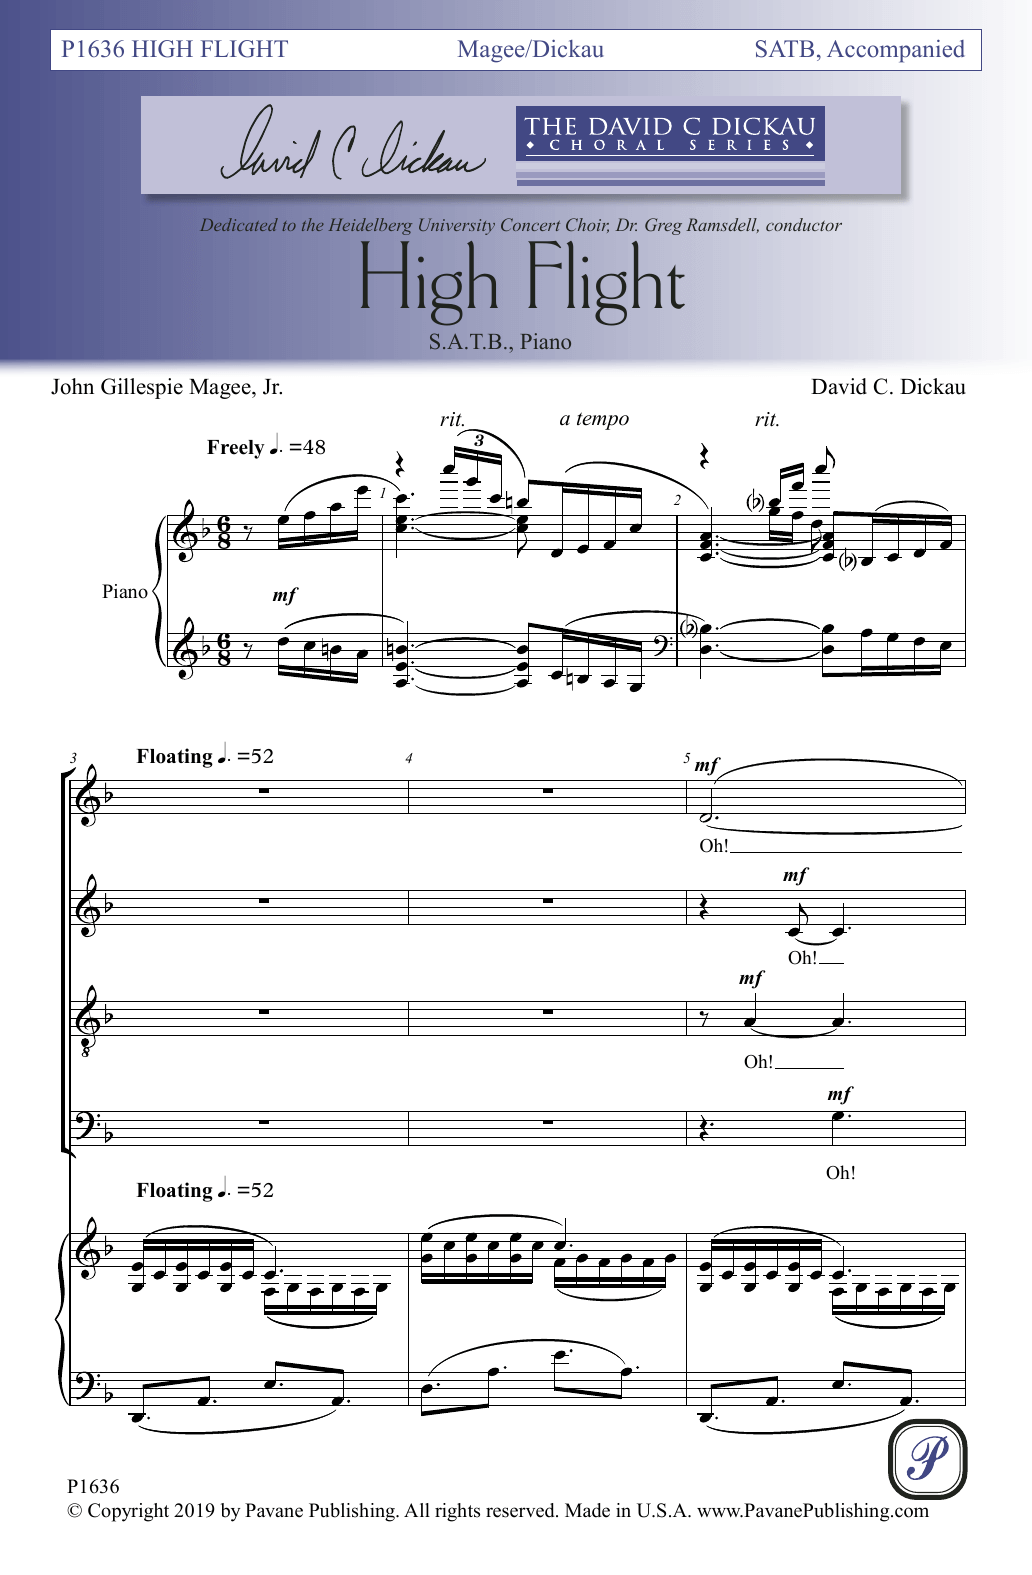 High Flight (SATB Choir) von John Gillespie Magee, Jr. and David C. Dickau